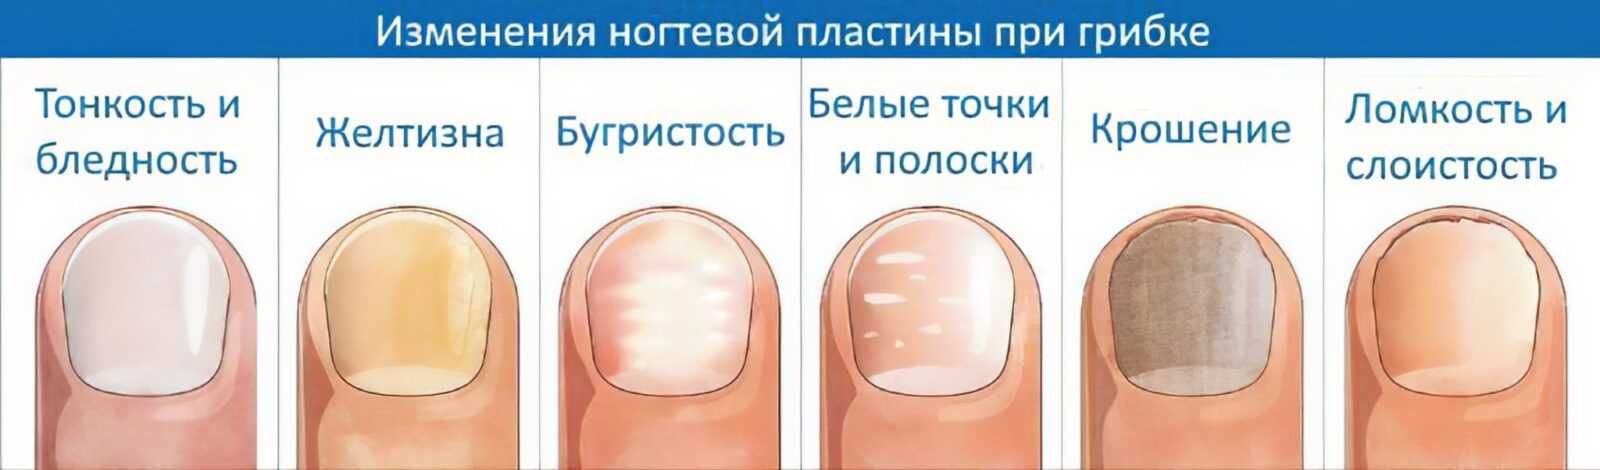 Деформация ногтей - причины, диагностика и лечение